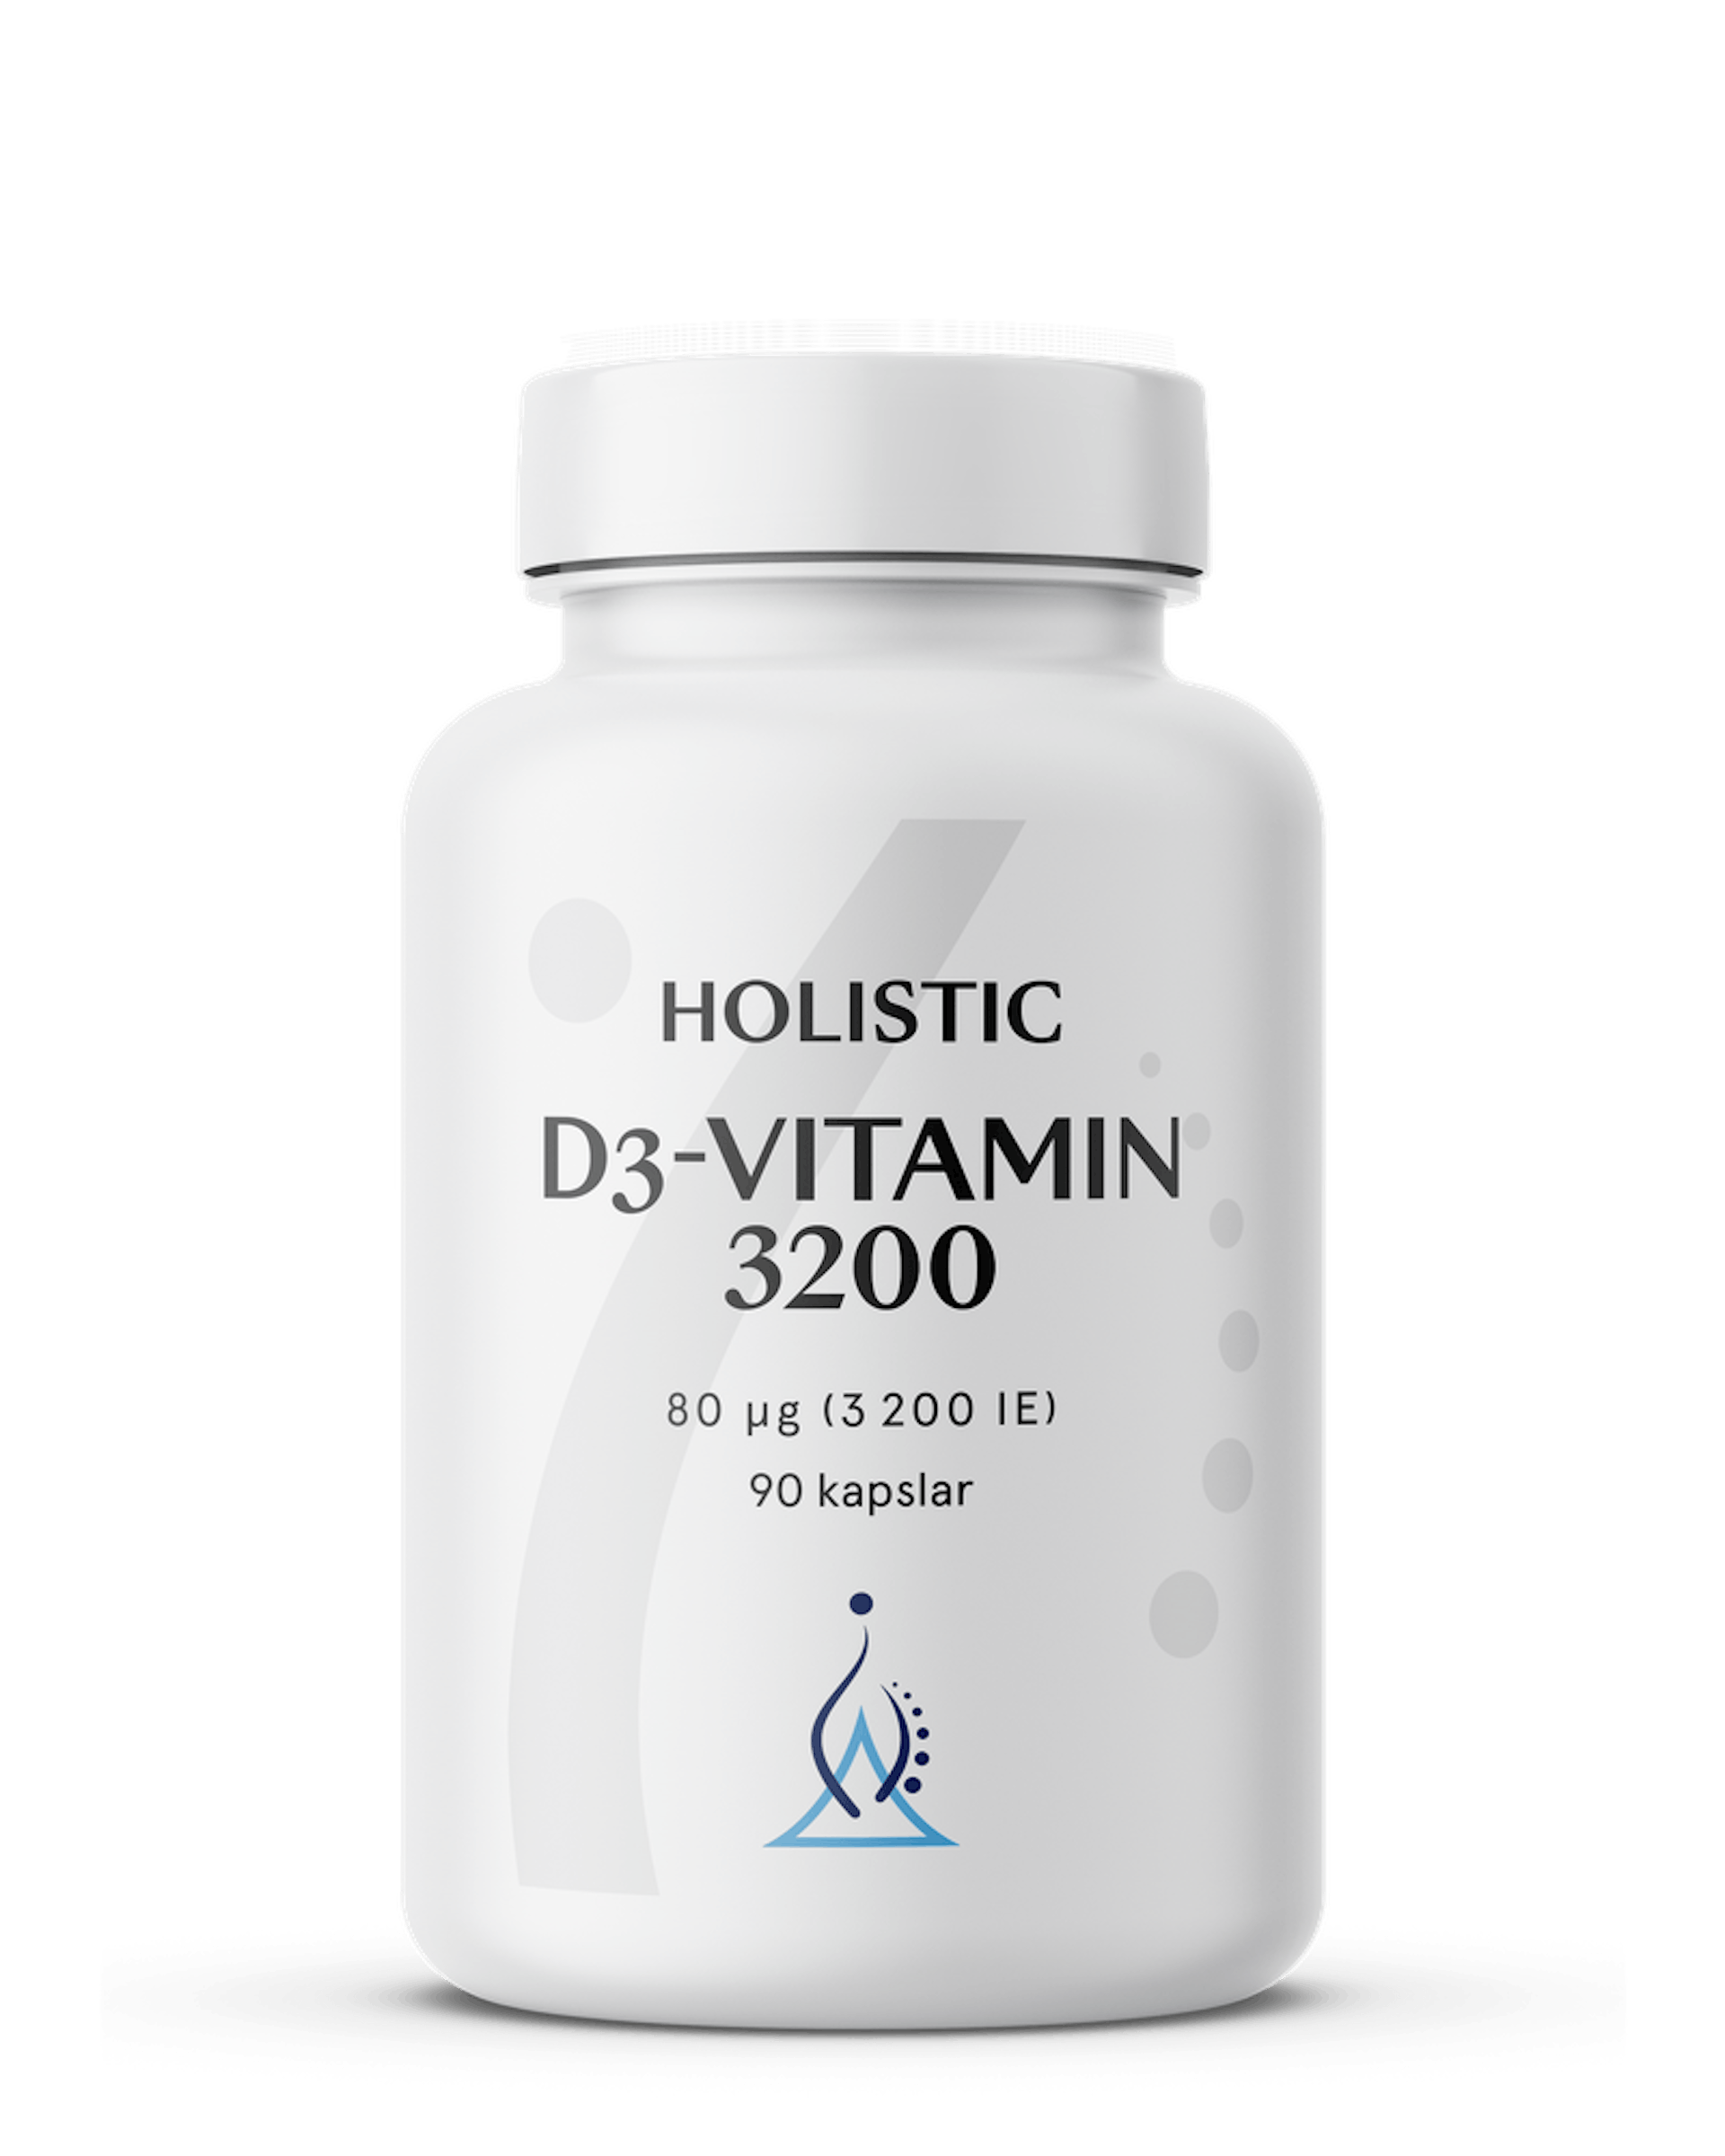 D3-vitamin 3200, 90 kapslar